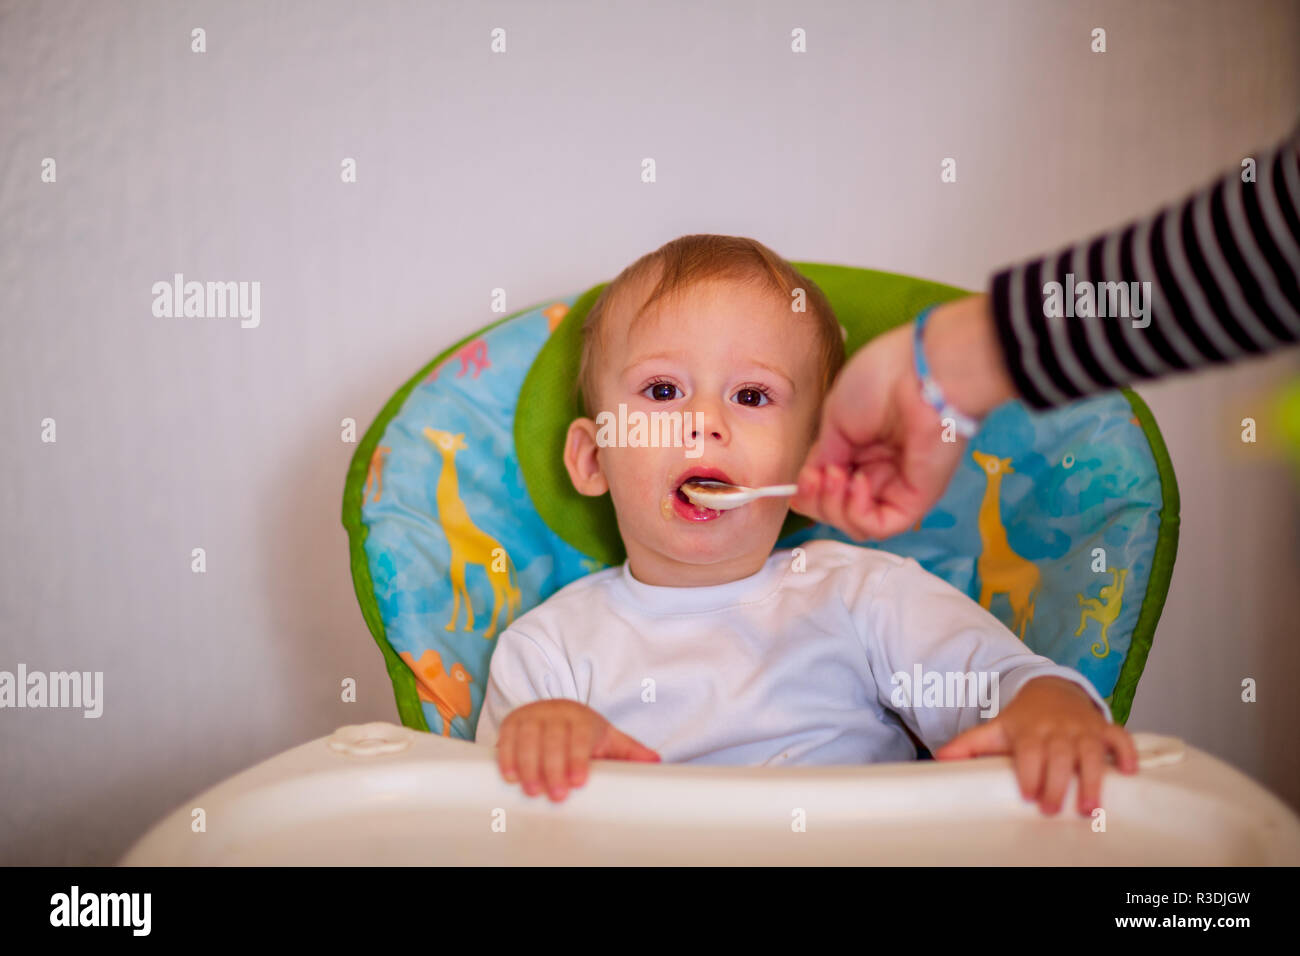 Alegre bebé niño come alimentos con cuchara Foto de stock